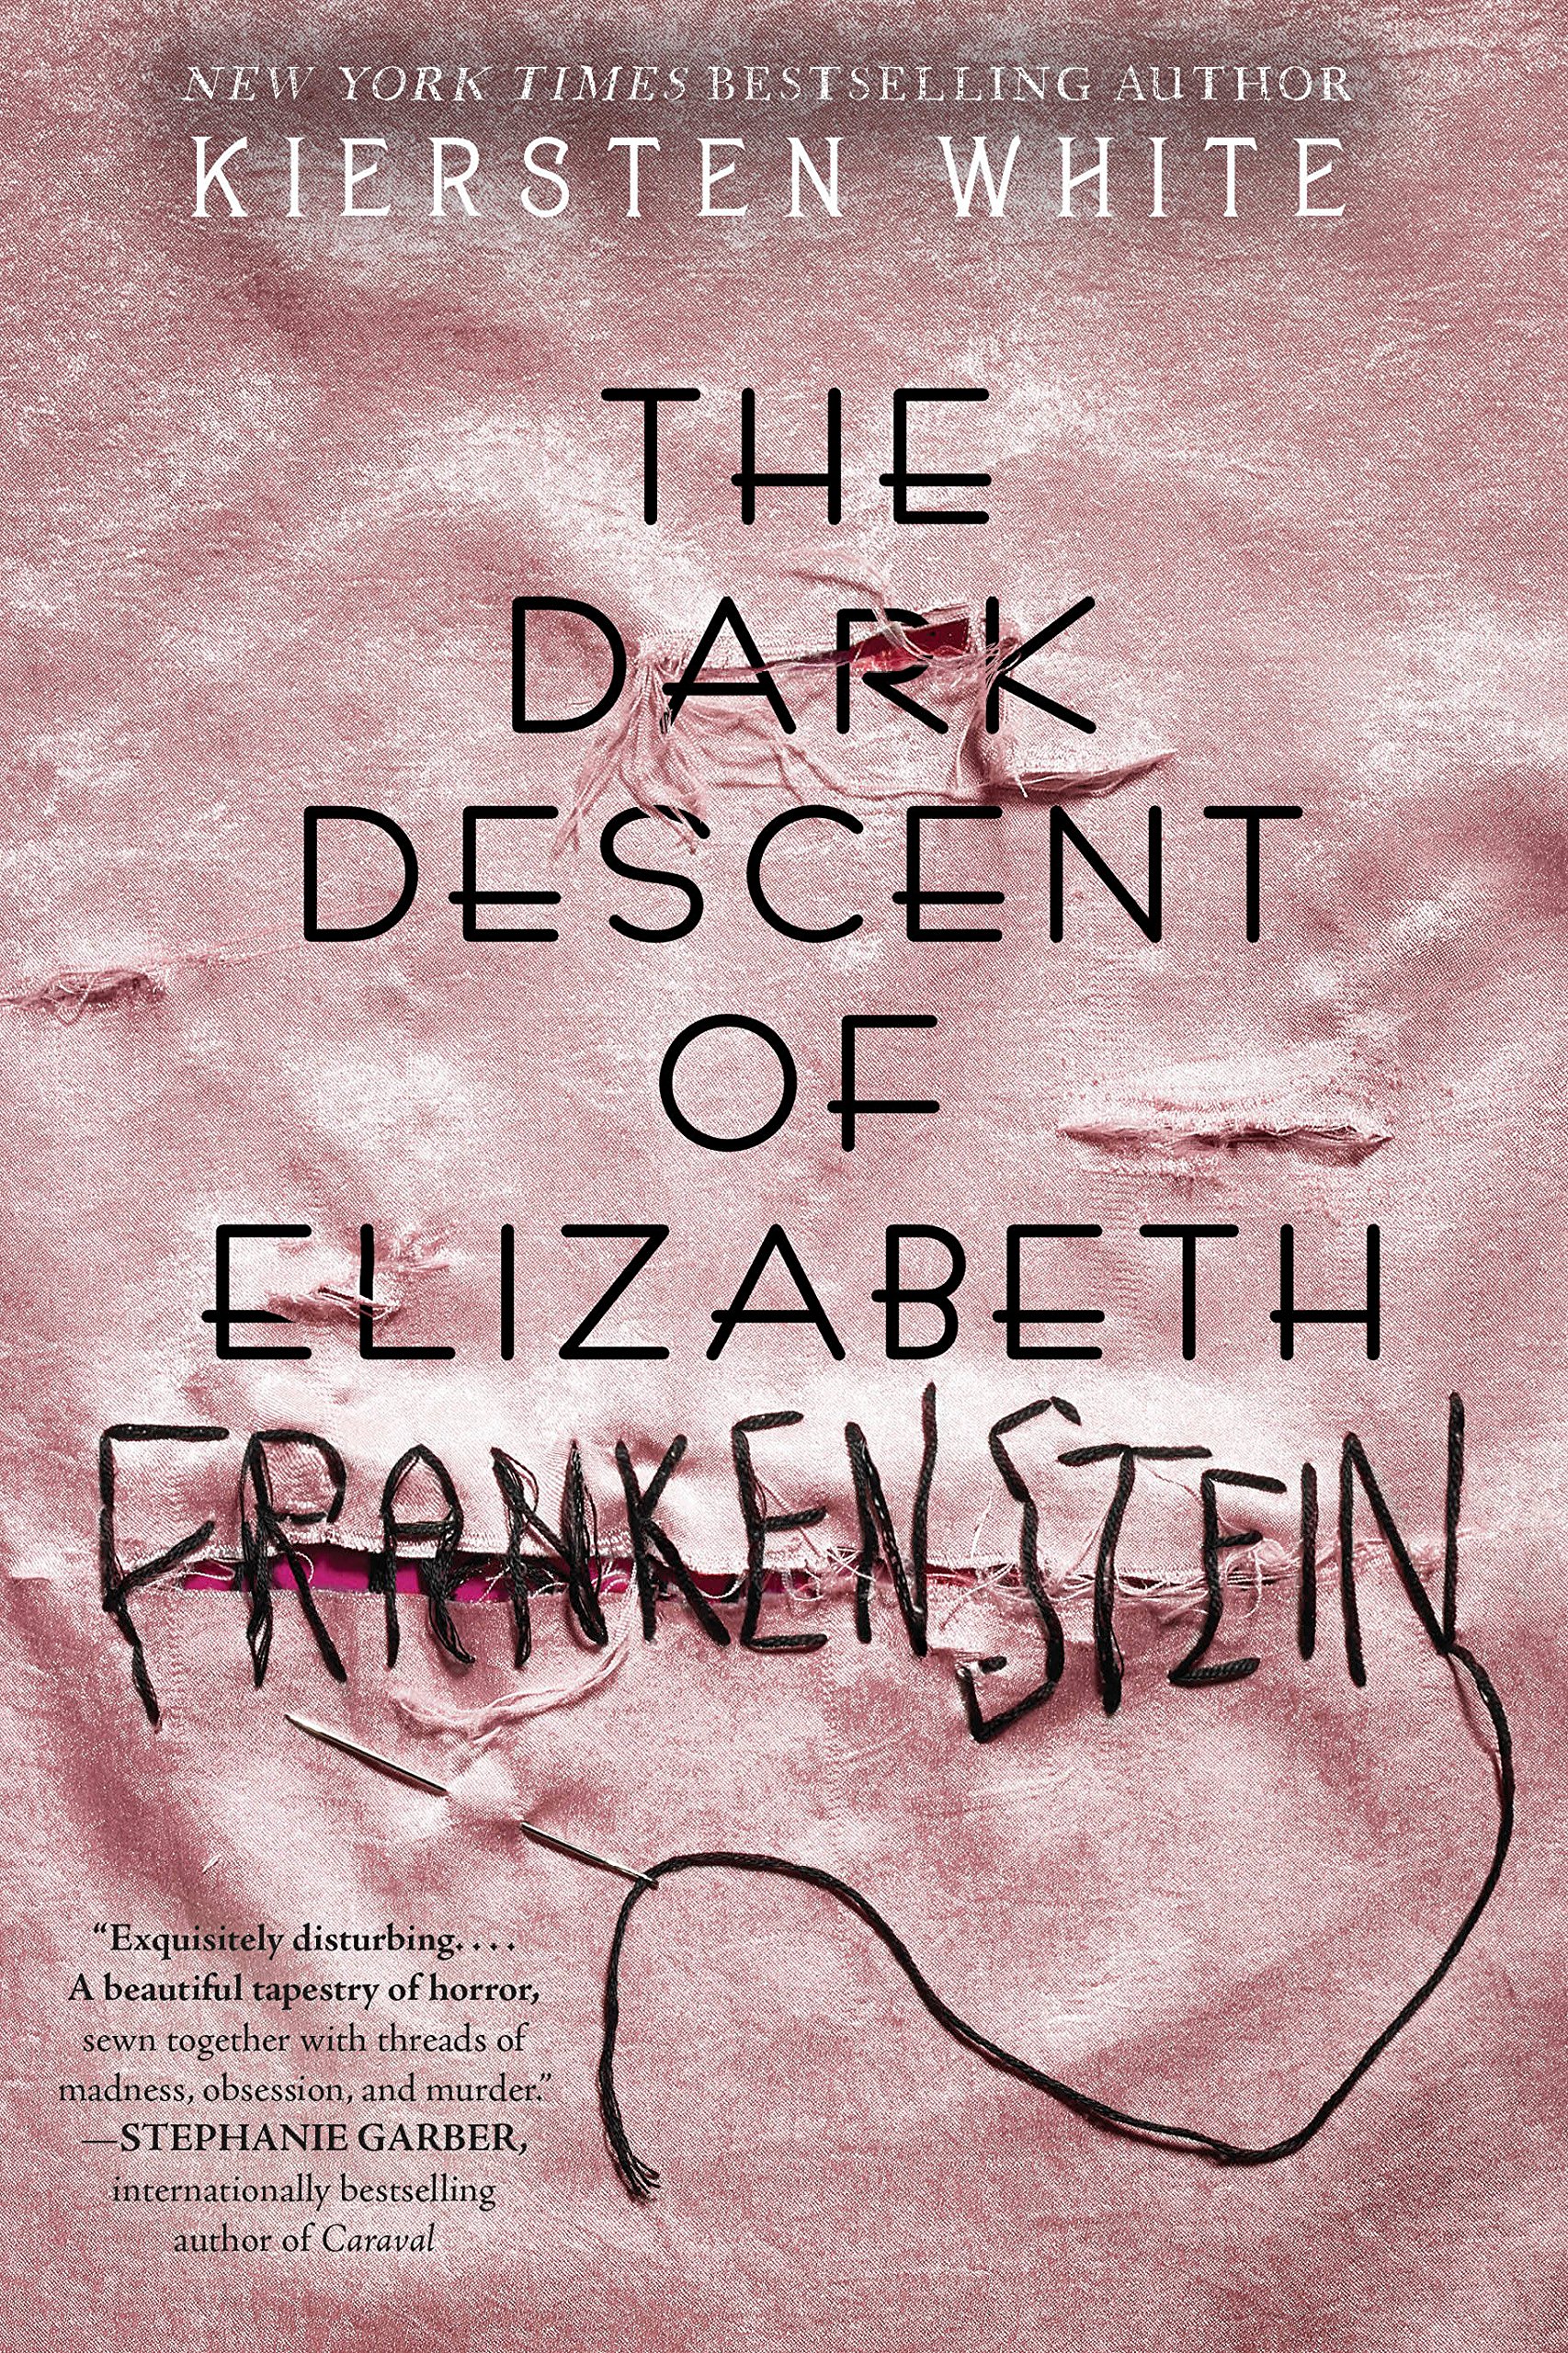 Book Review: “The Dark Descent of Elizabeth Frankenstein” by Kiersten White